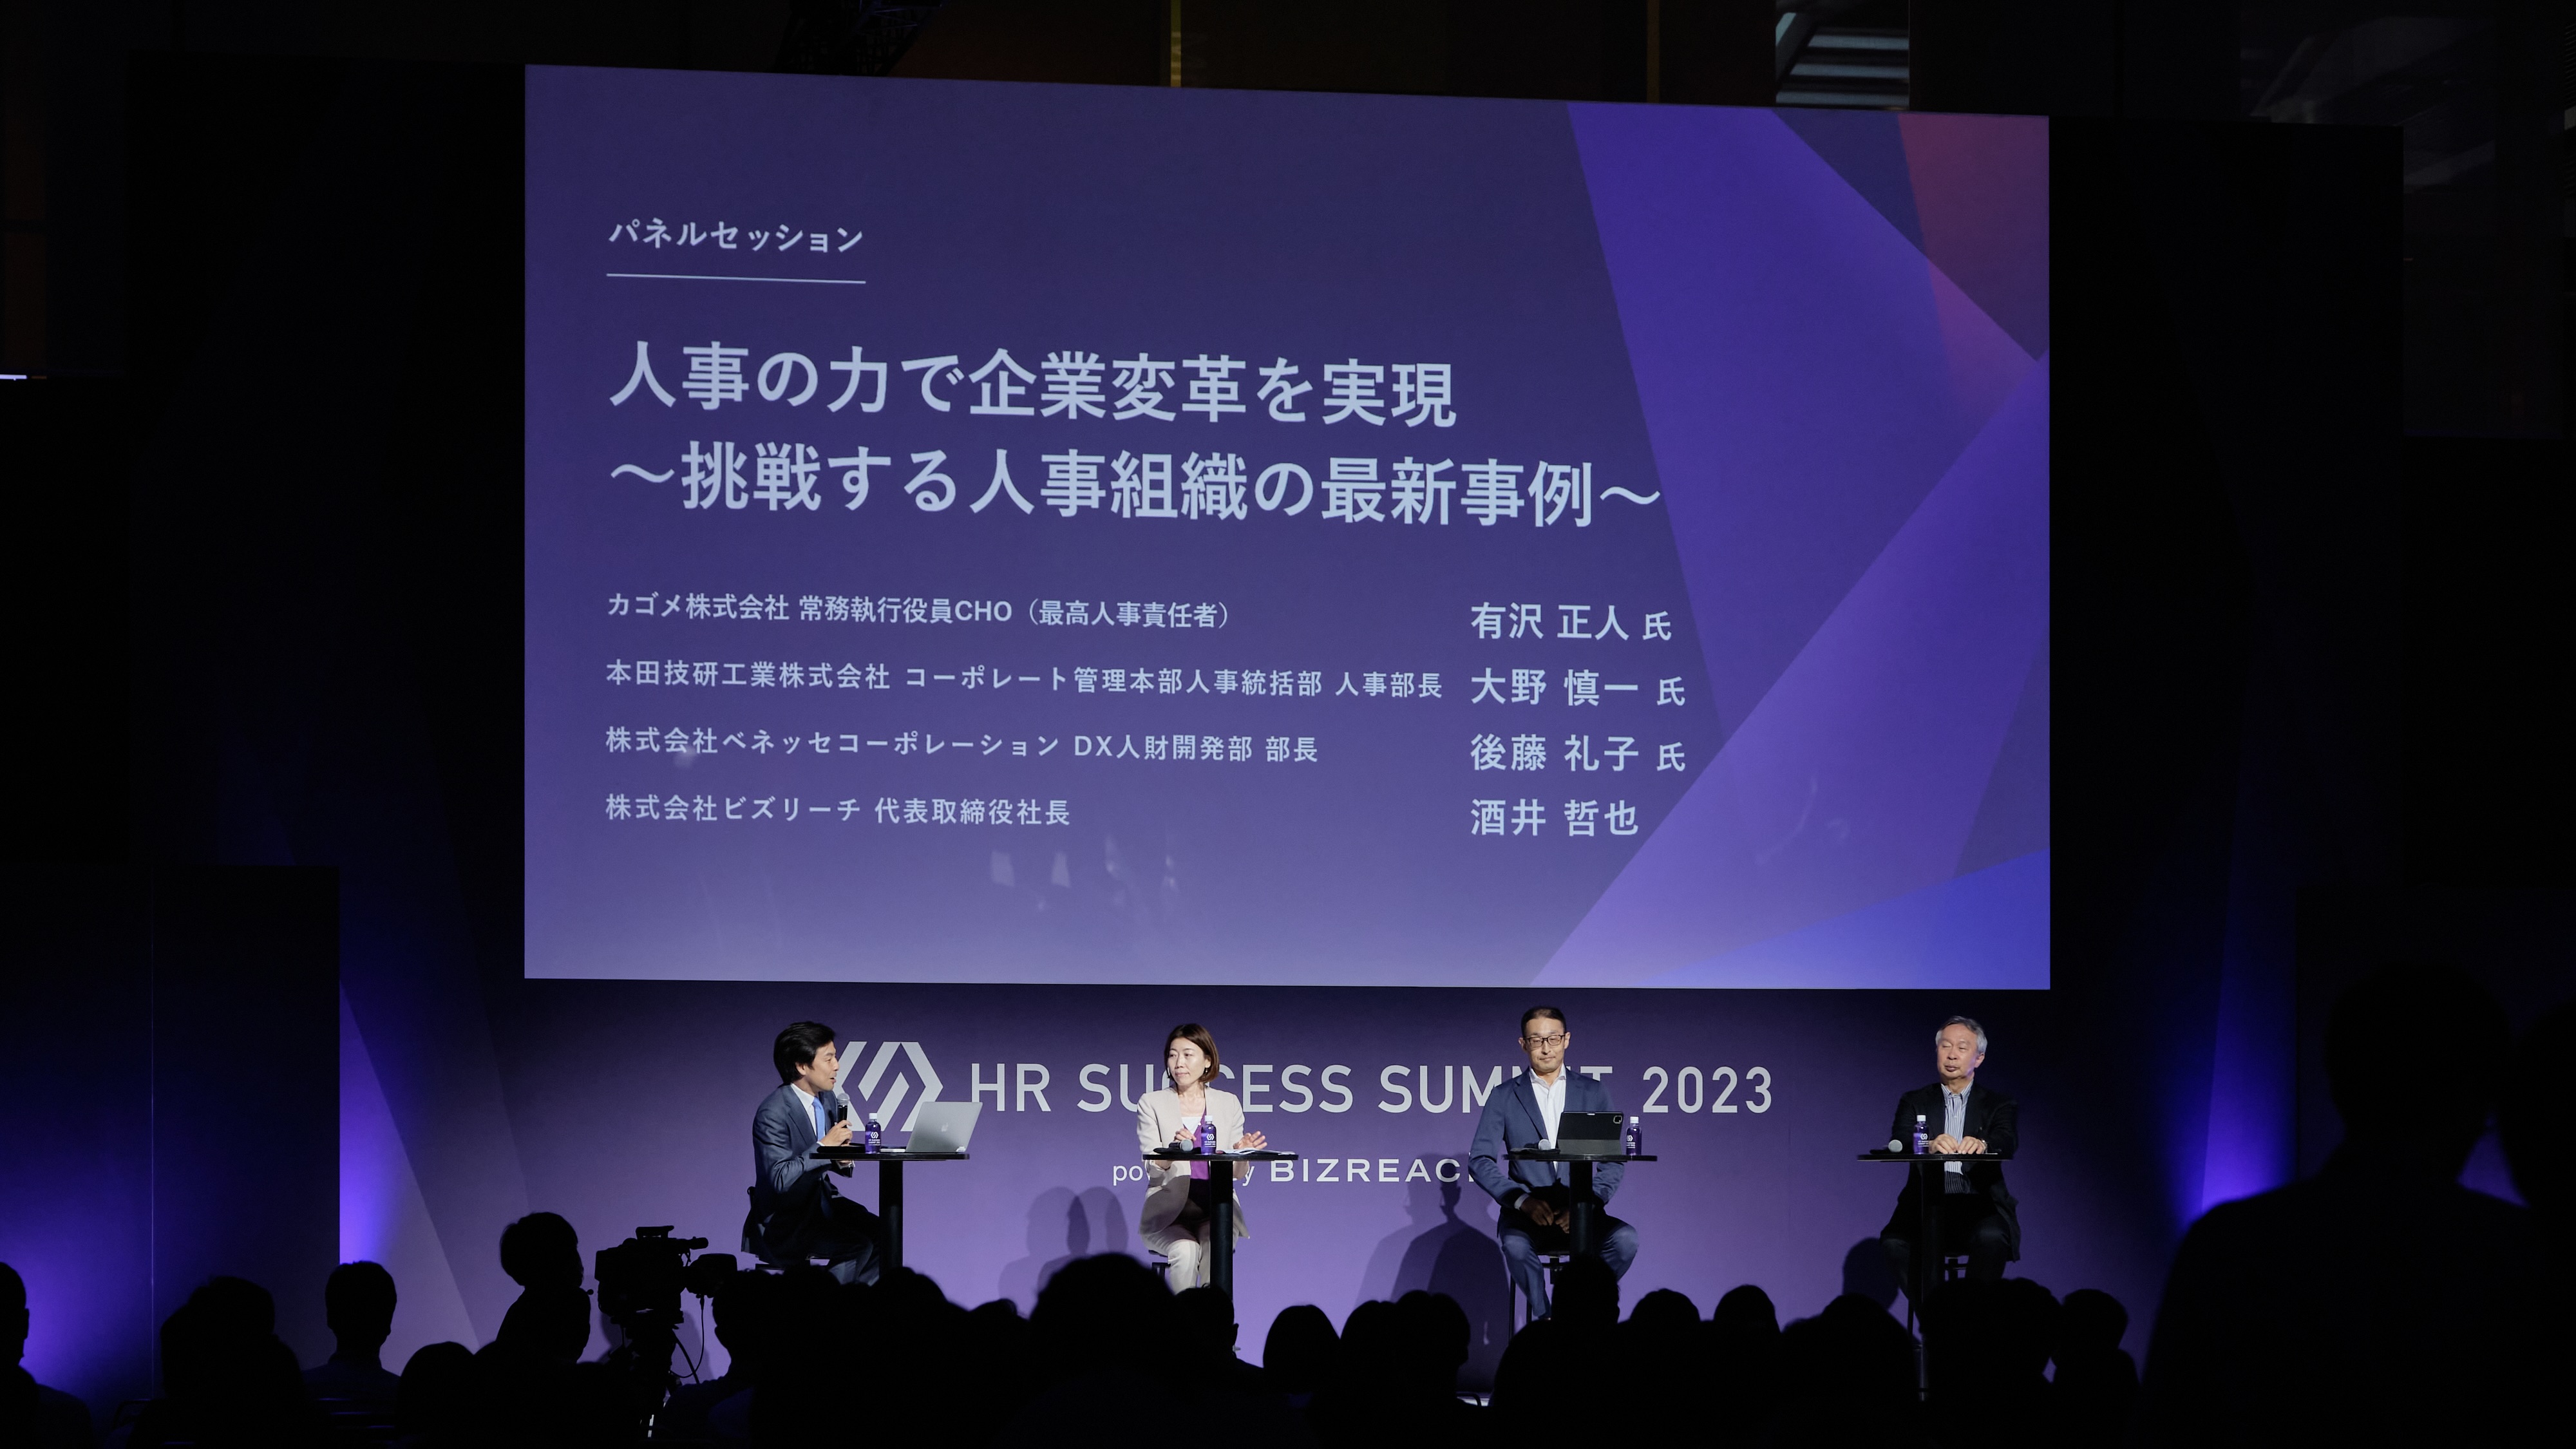 HR業界日本最大のイベントを目指し、熱量の高い場を創りたい。「HR SUCCESS SUMMIT」に込められた想いを紹介します。